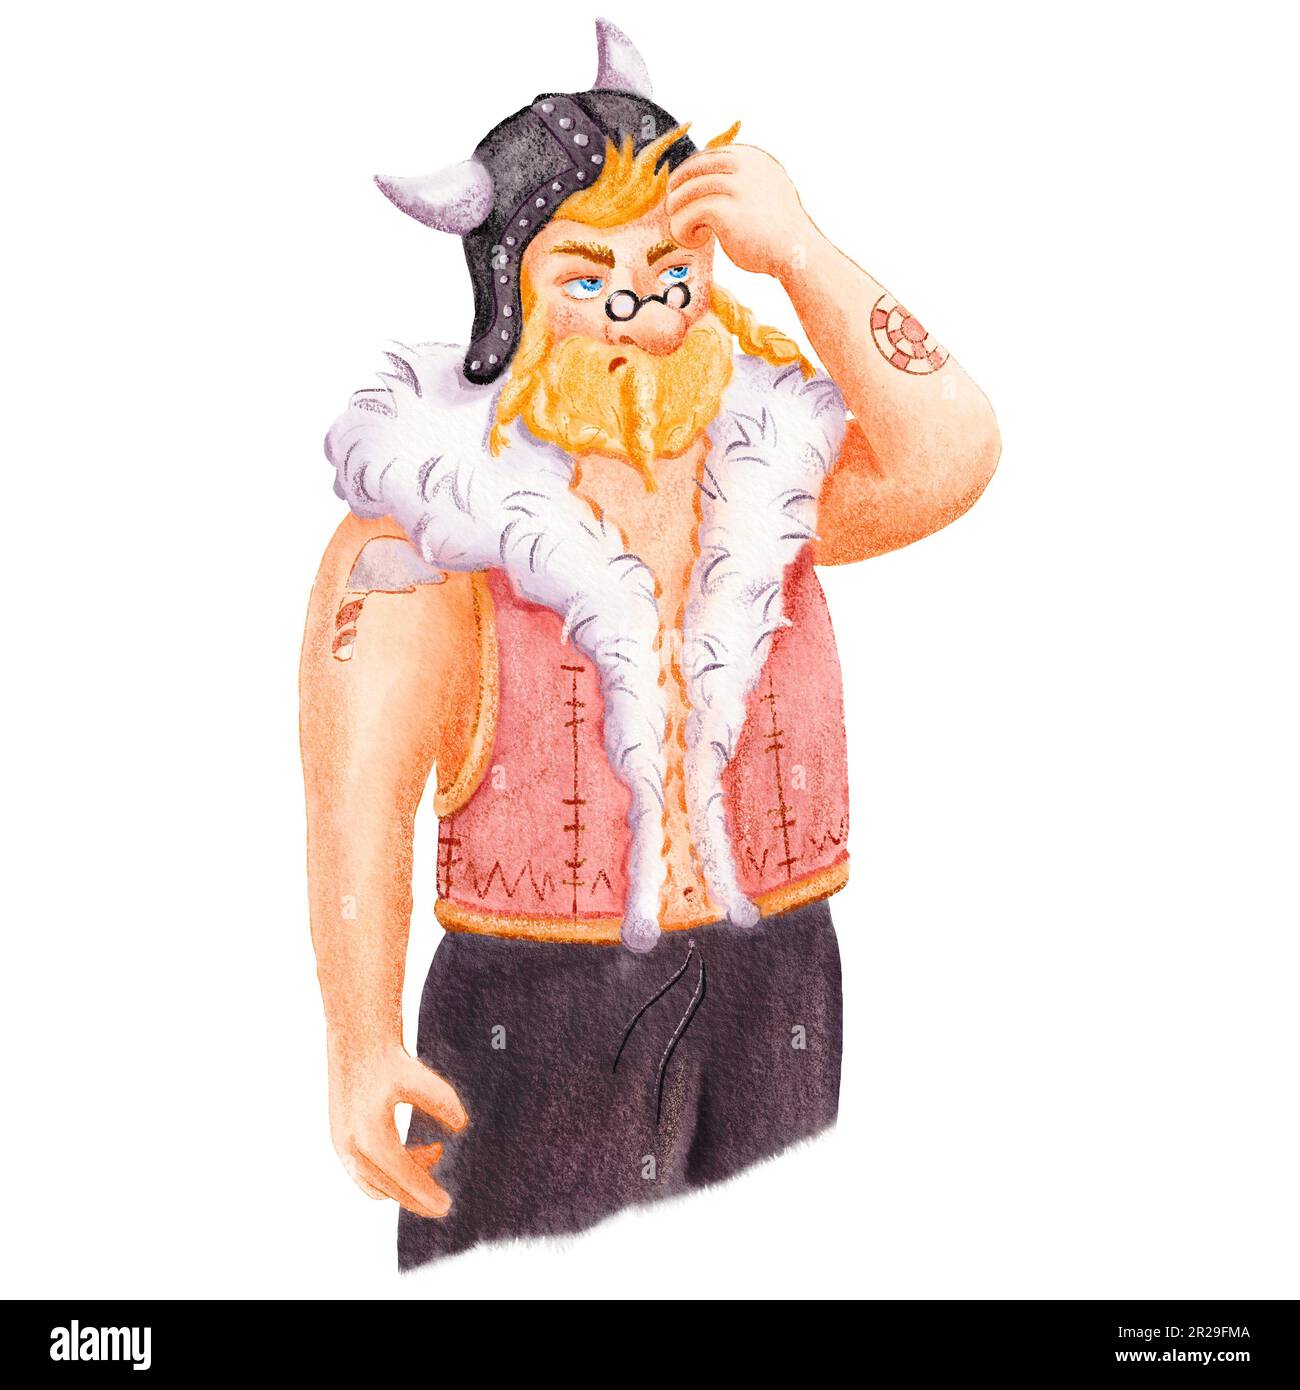 Illustration aquarelle de dessins animés insolites de l'ancien Viking scandinave. Portrait d'un homme confus en lunettes et gilet de fourrure. Drôle scandinave mignon Banque D'Images